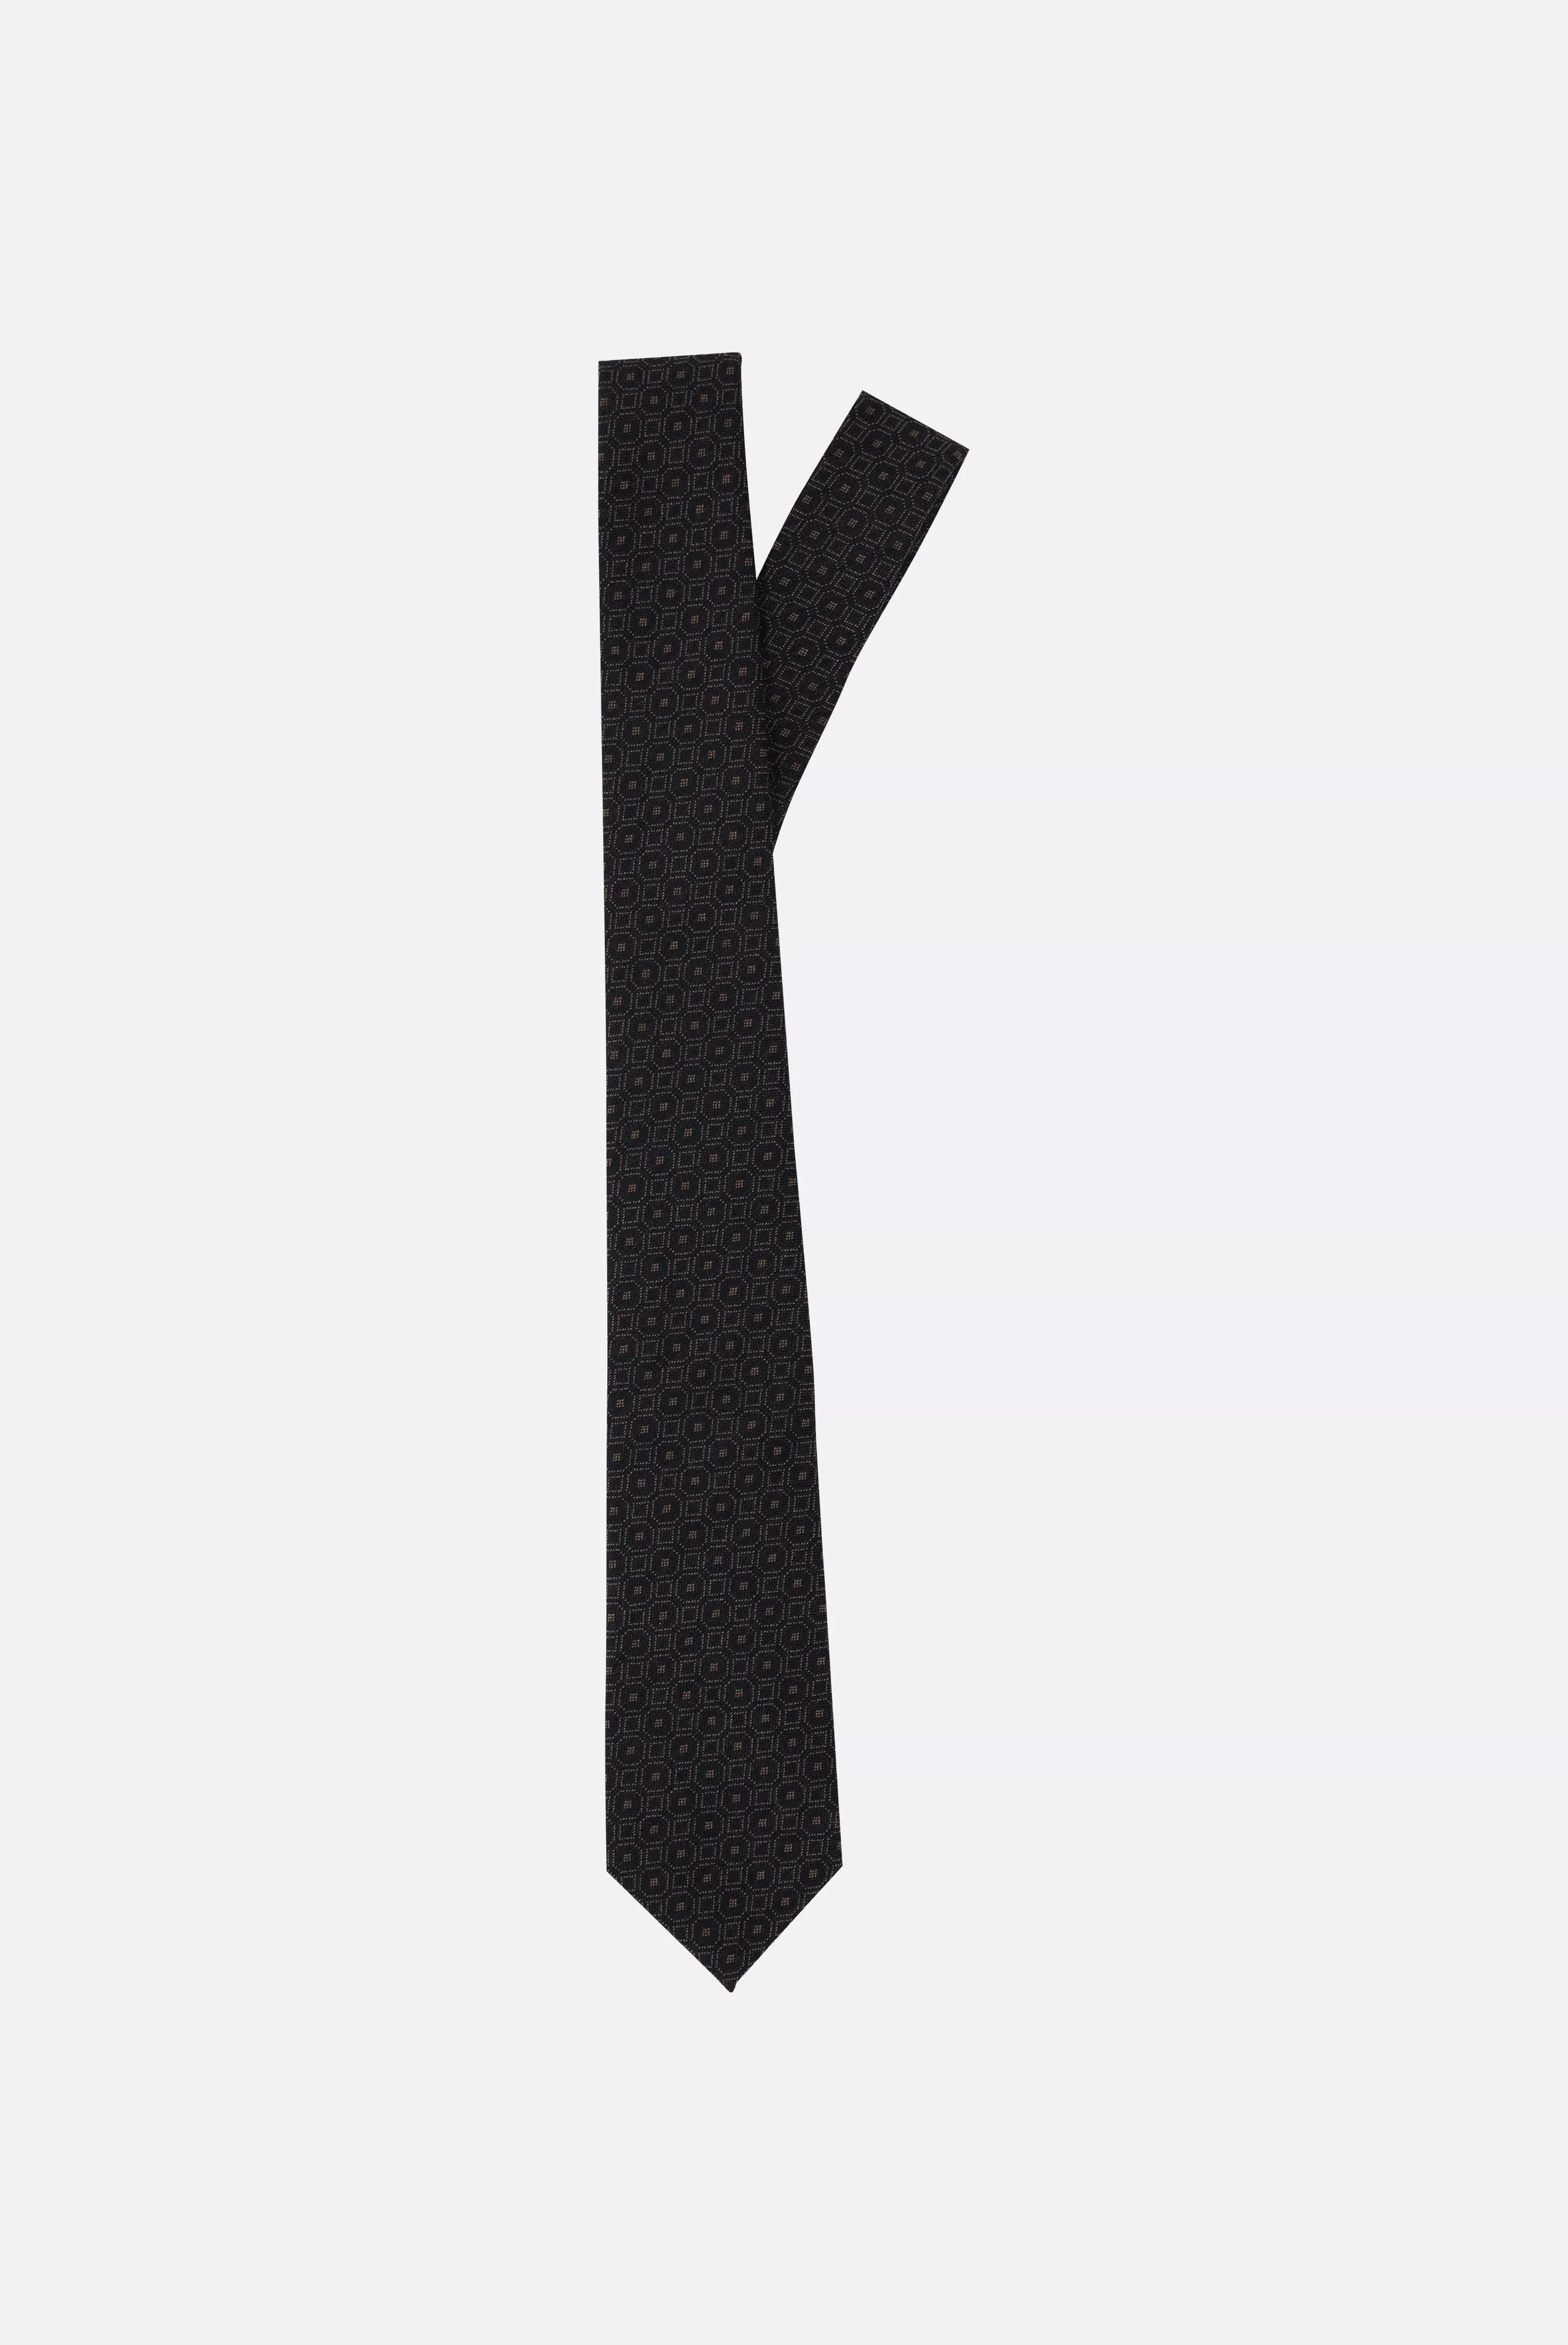 галстук LEROY коричневый LEROY_K04326_190 ,photo 1